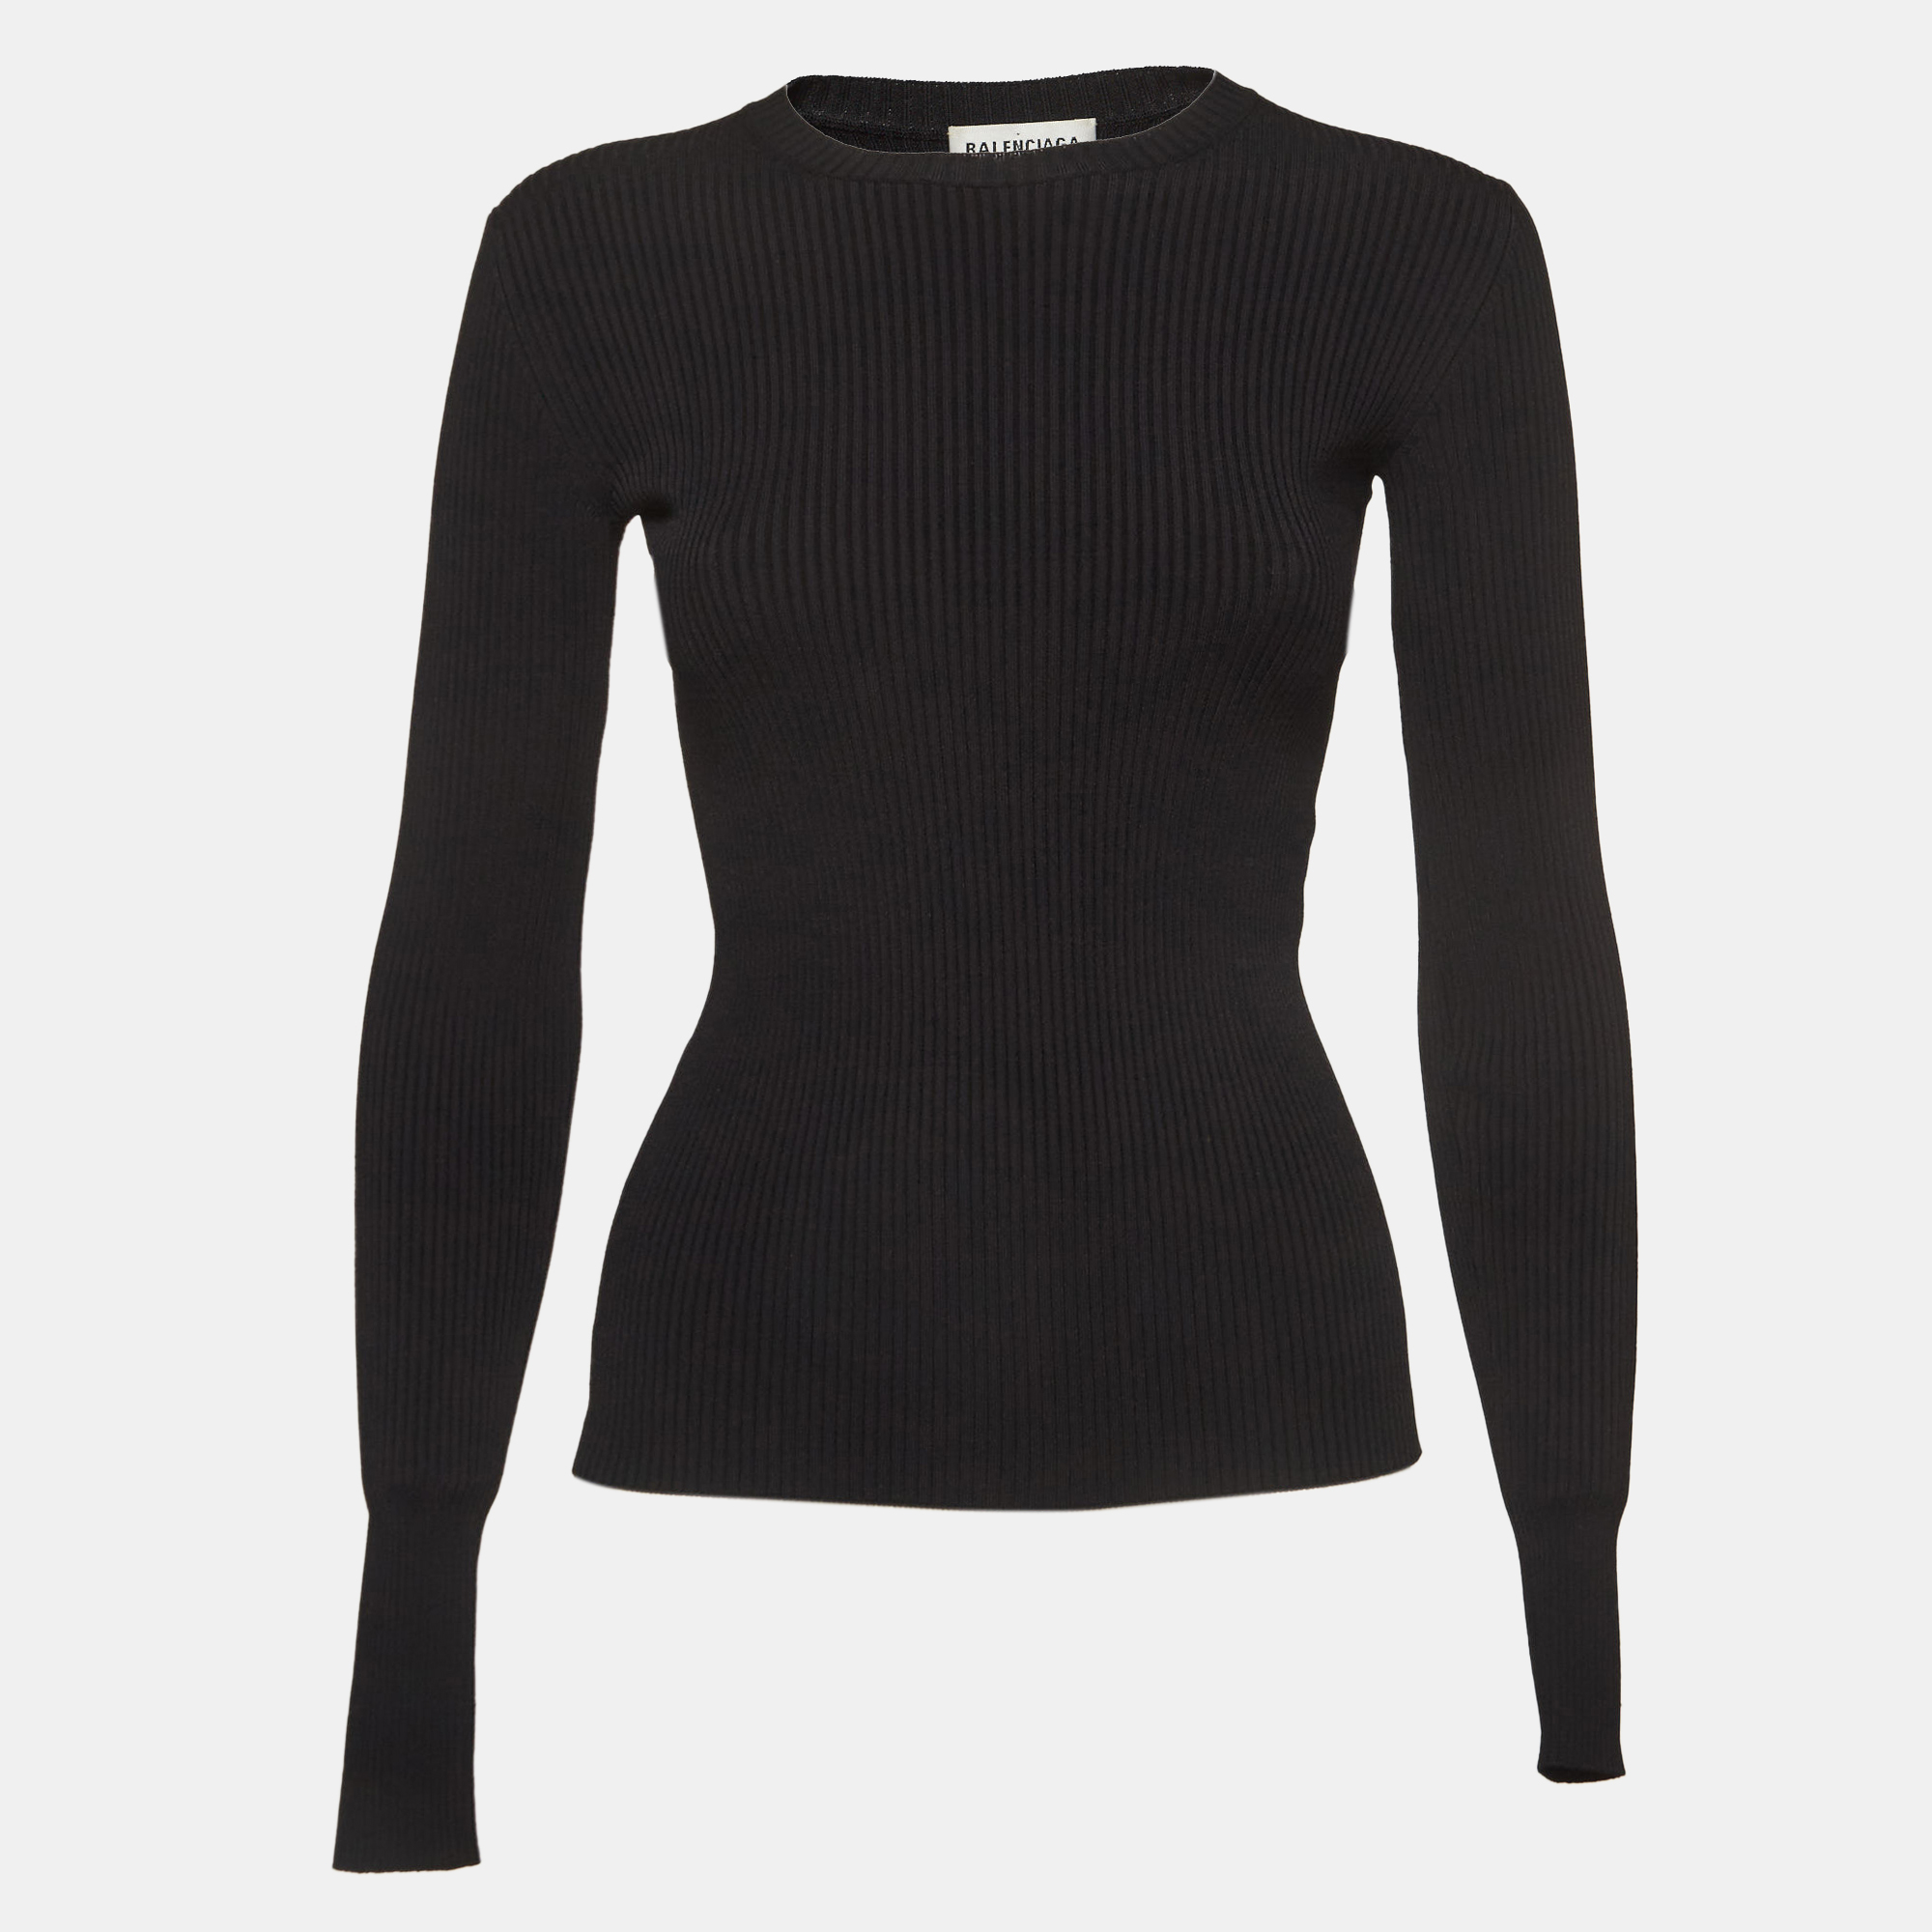 Balenciaga black logo applique rip knit crew neck top s